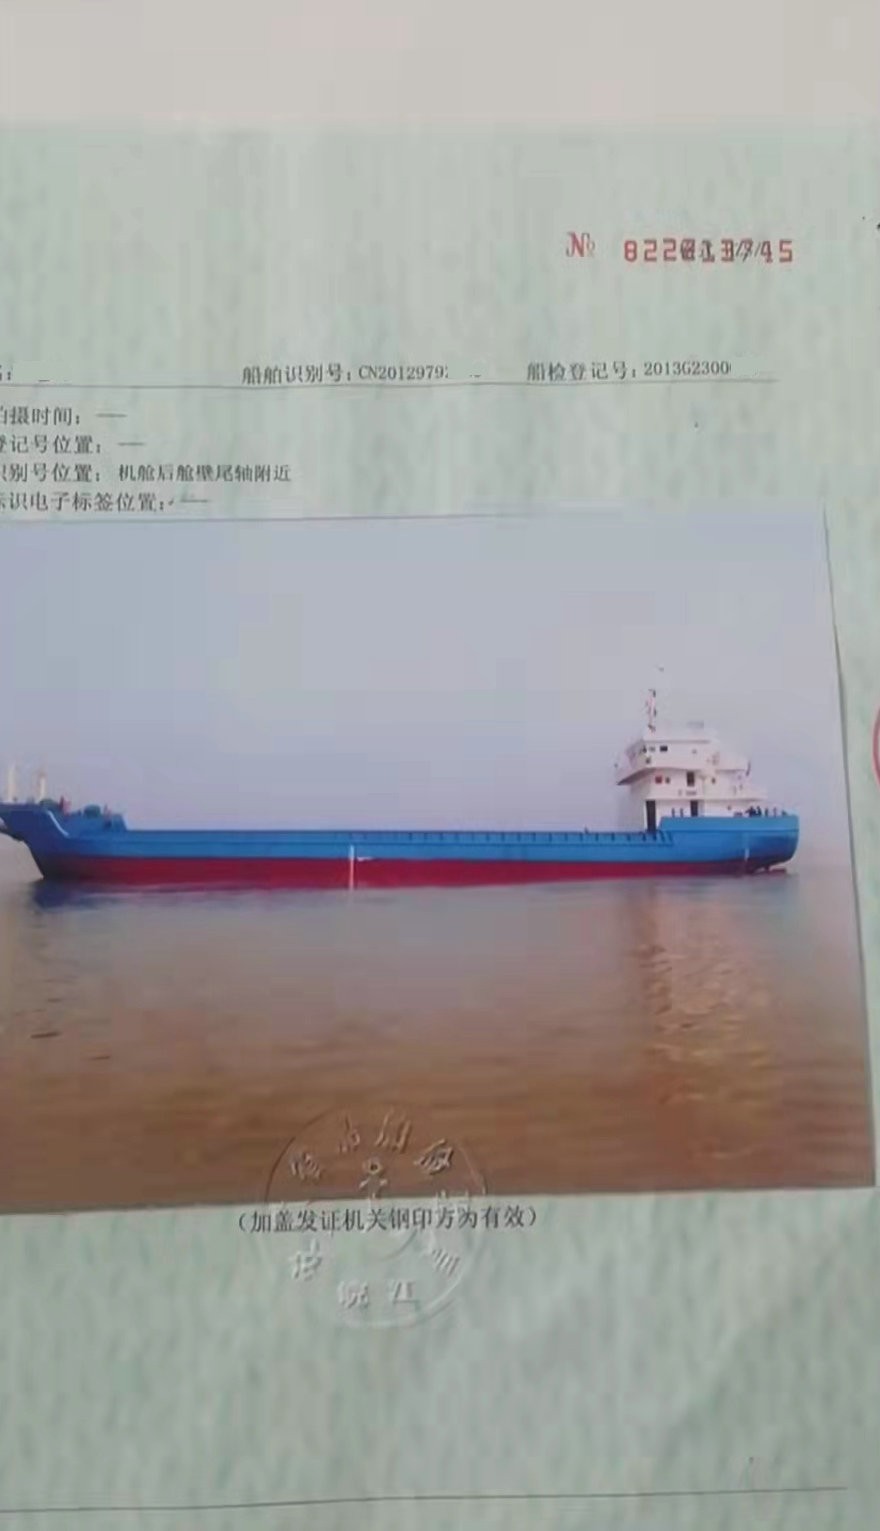 2013年沿海1460吨甲板货船